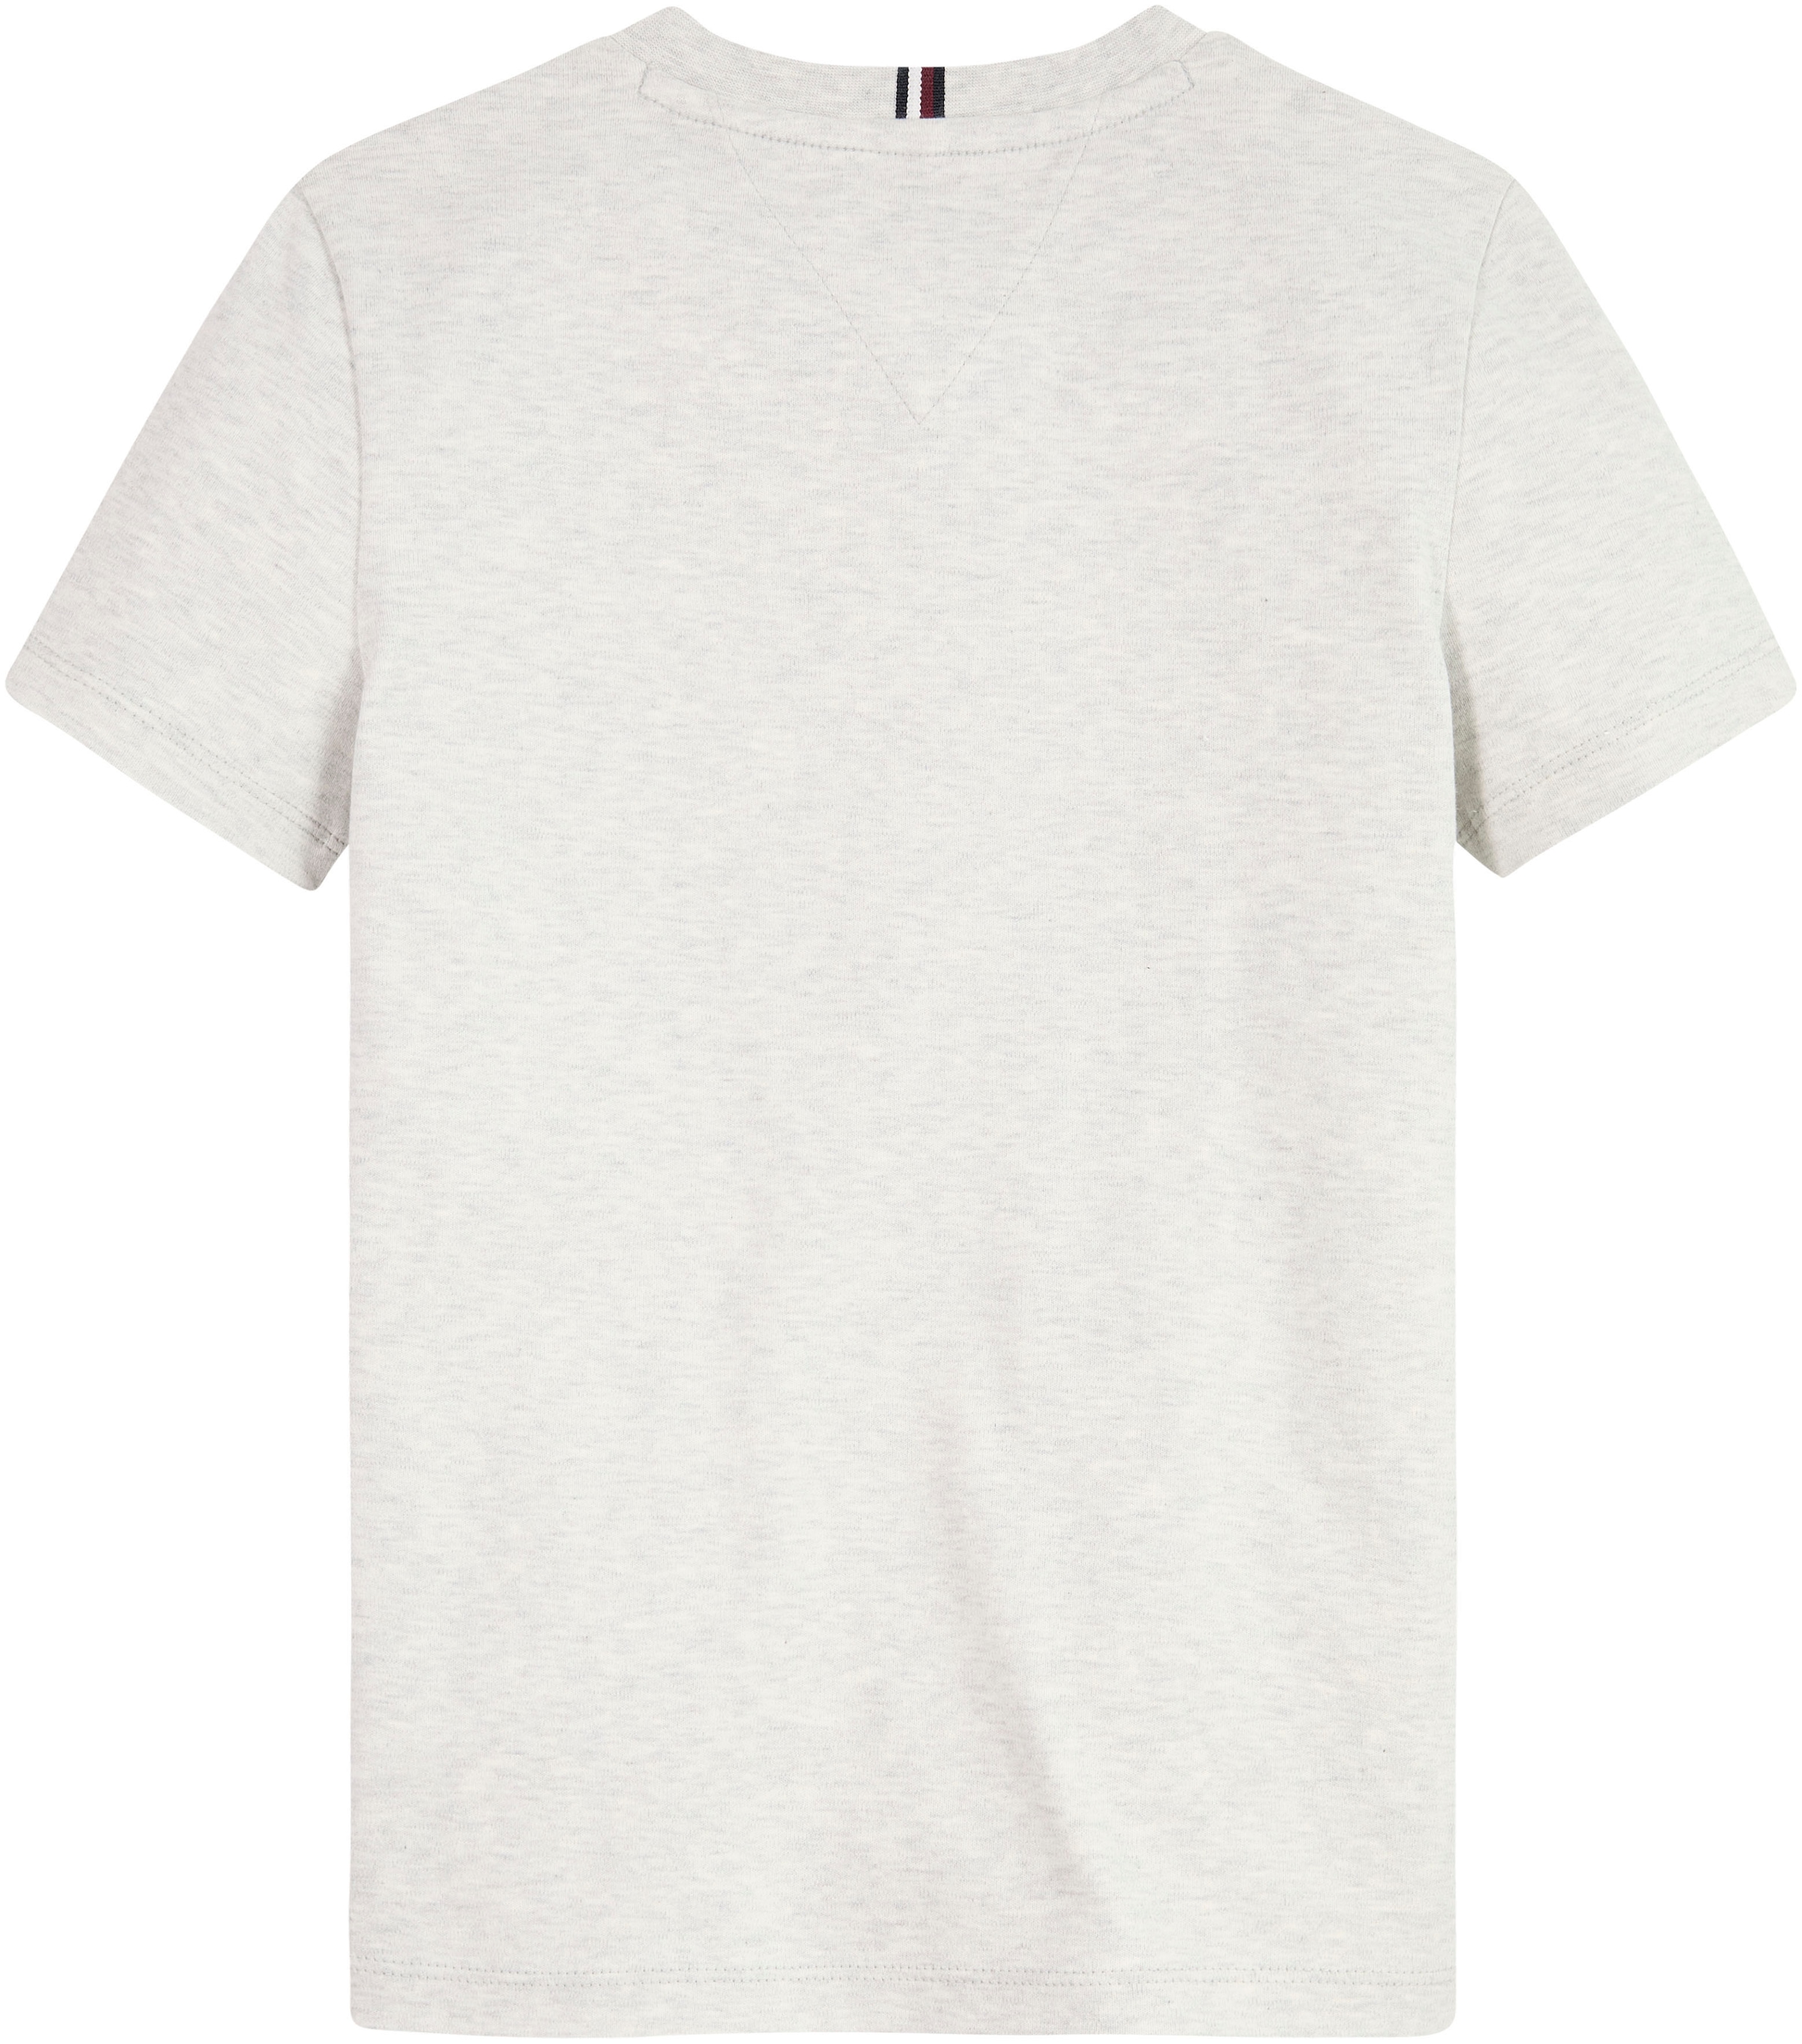 Tommy Hilfiger T-Shirt »HILFIGER LOGO TEE S/S«, mit Hilfiger Statement Print  bei